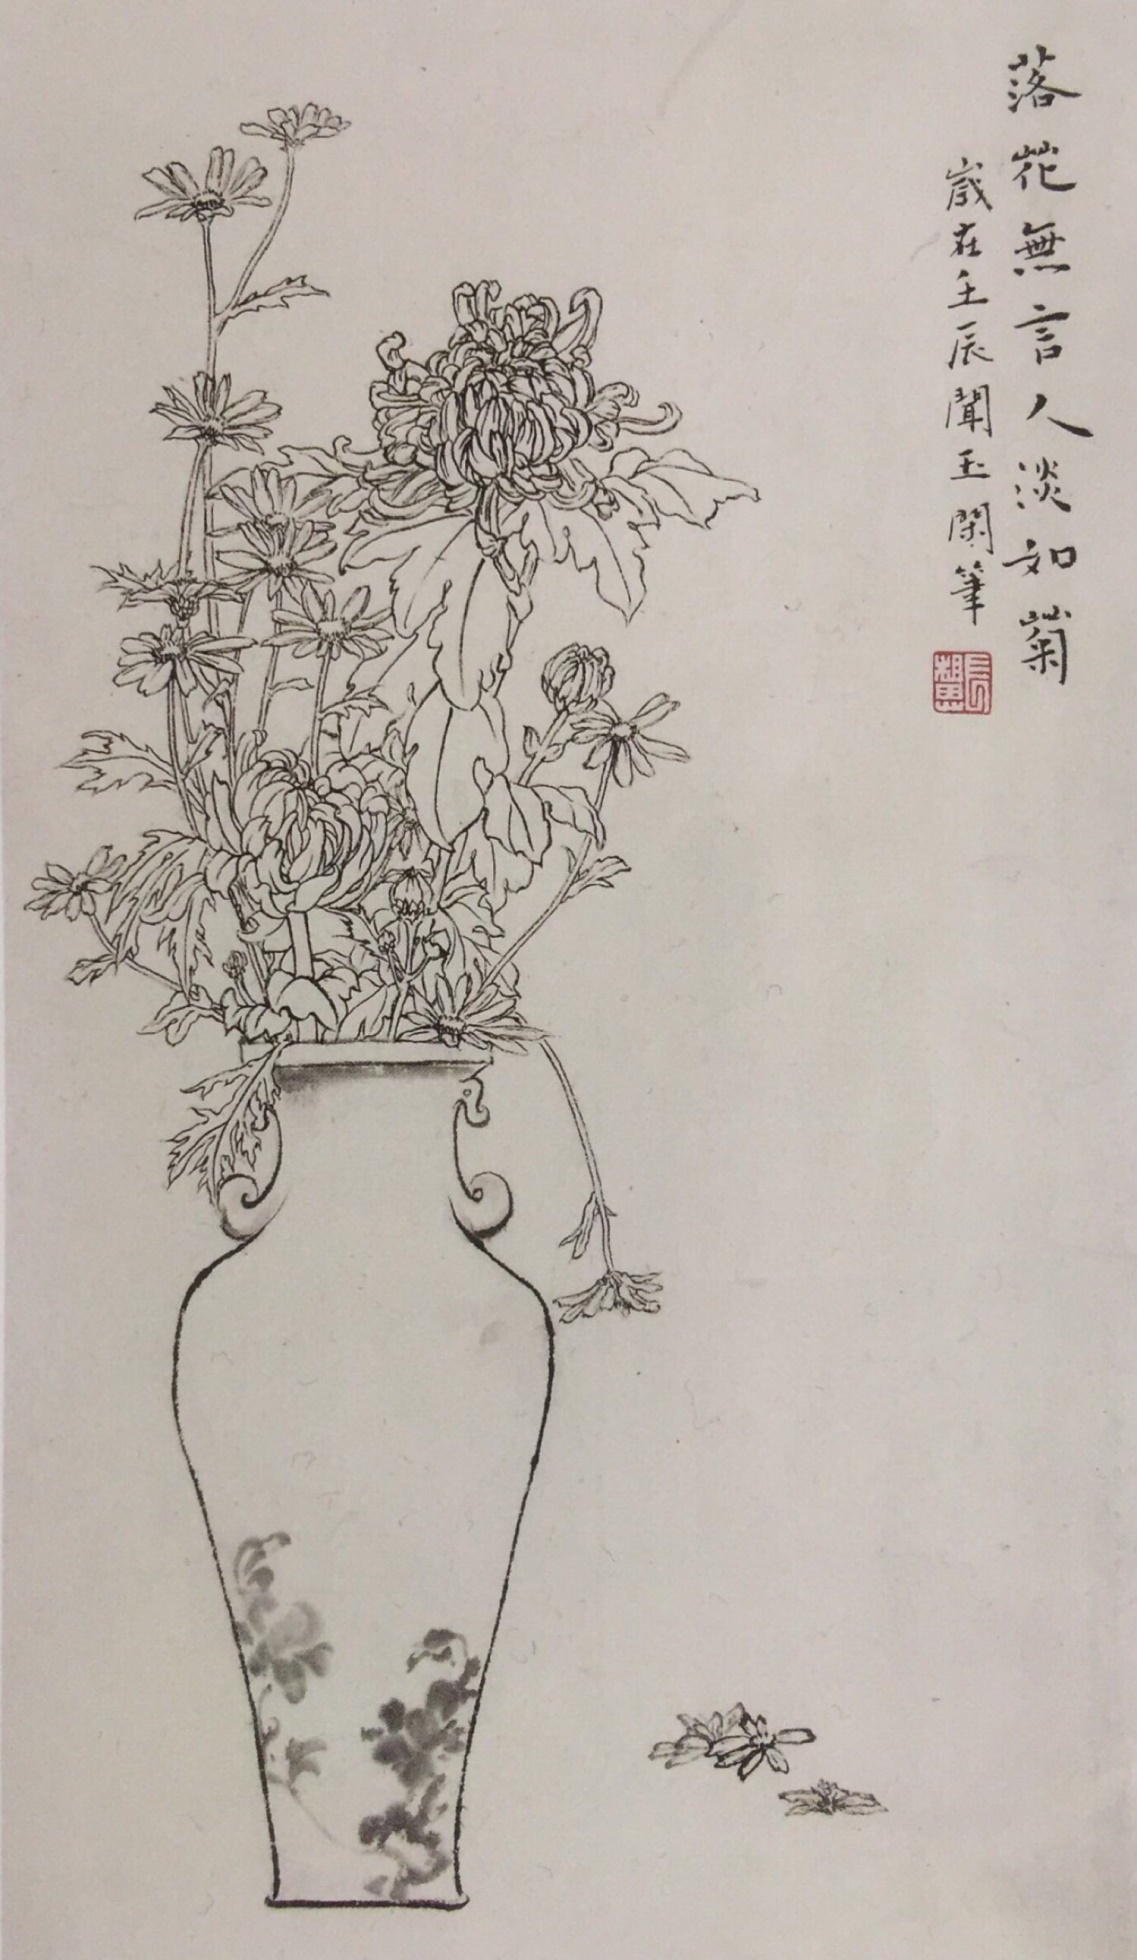 中国美术学院美术考级花鸟画考级九级(高级)示范图例。